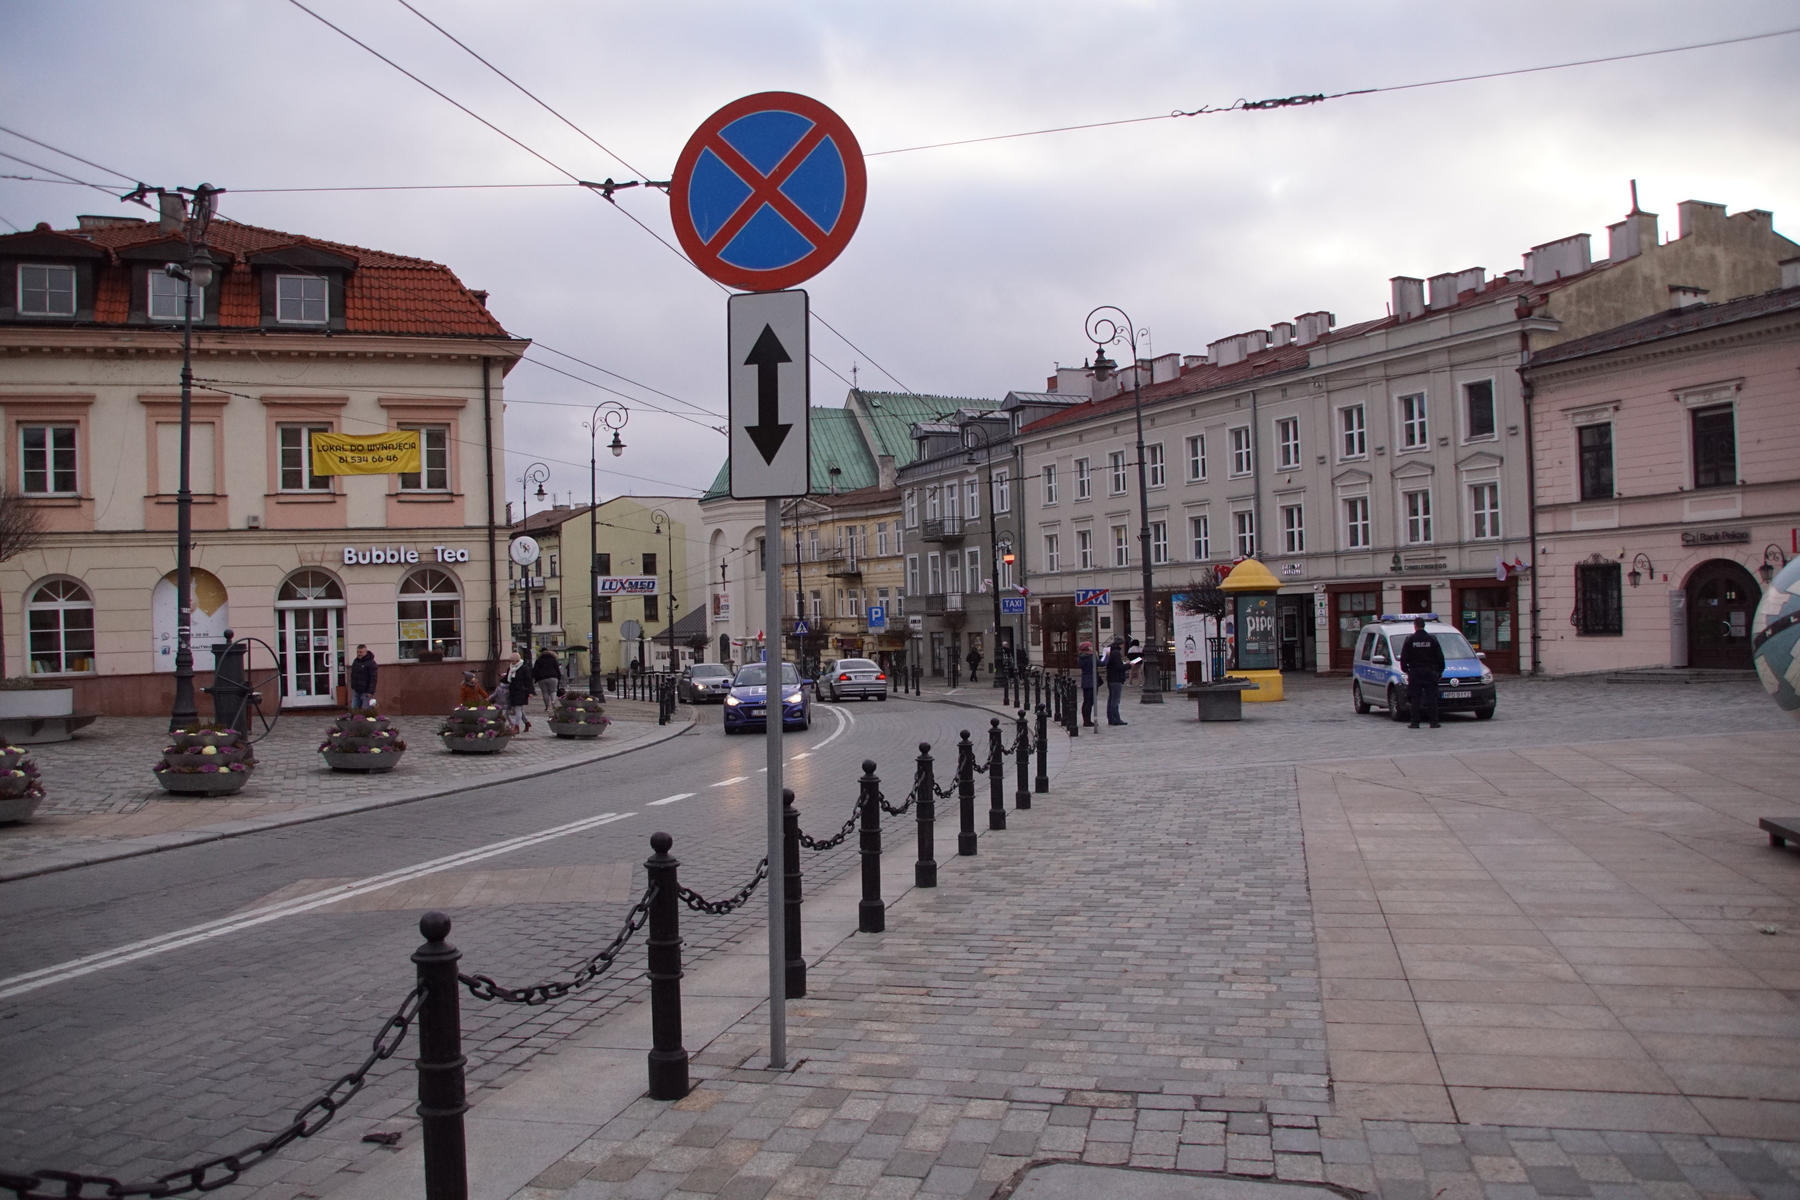 Makieta Lublina na postoju taksówek. Utrudnia przejazd, dochodzi do niebezpiecznych sytuacji (zdjęcia)